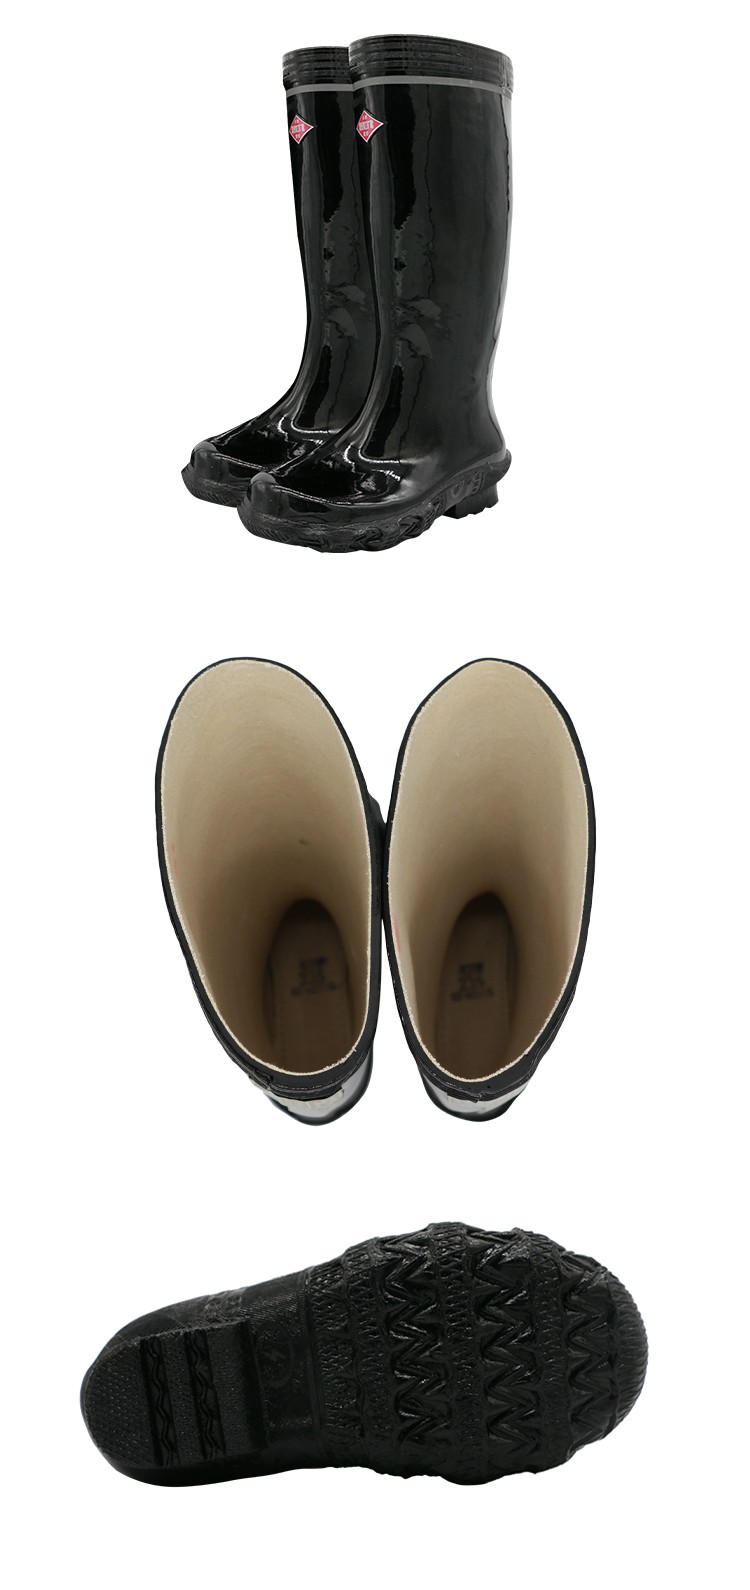 双安 BX001中筒工矿靴（带小底）-35